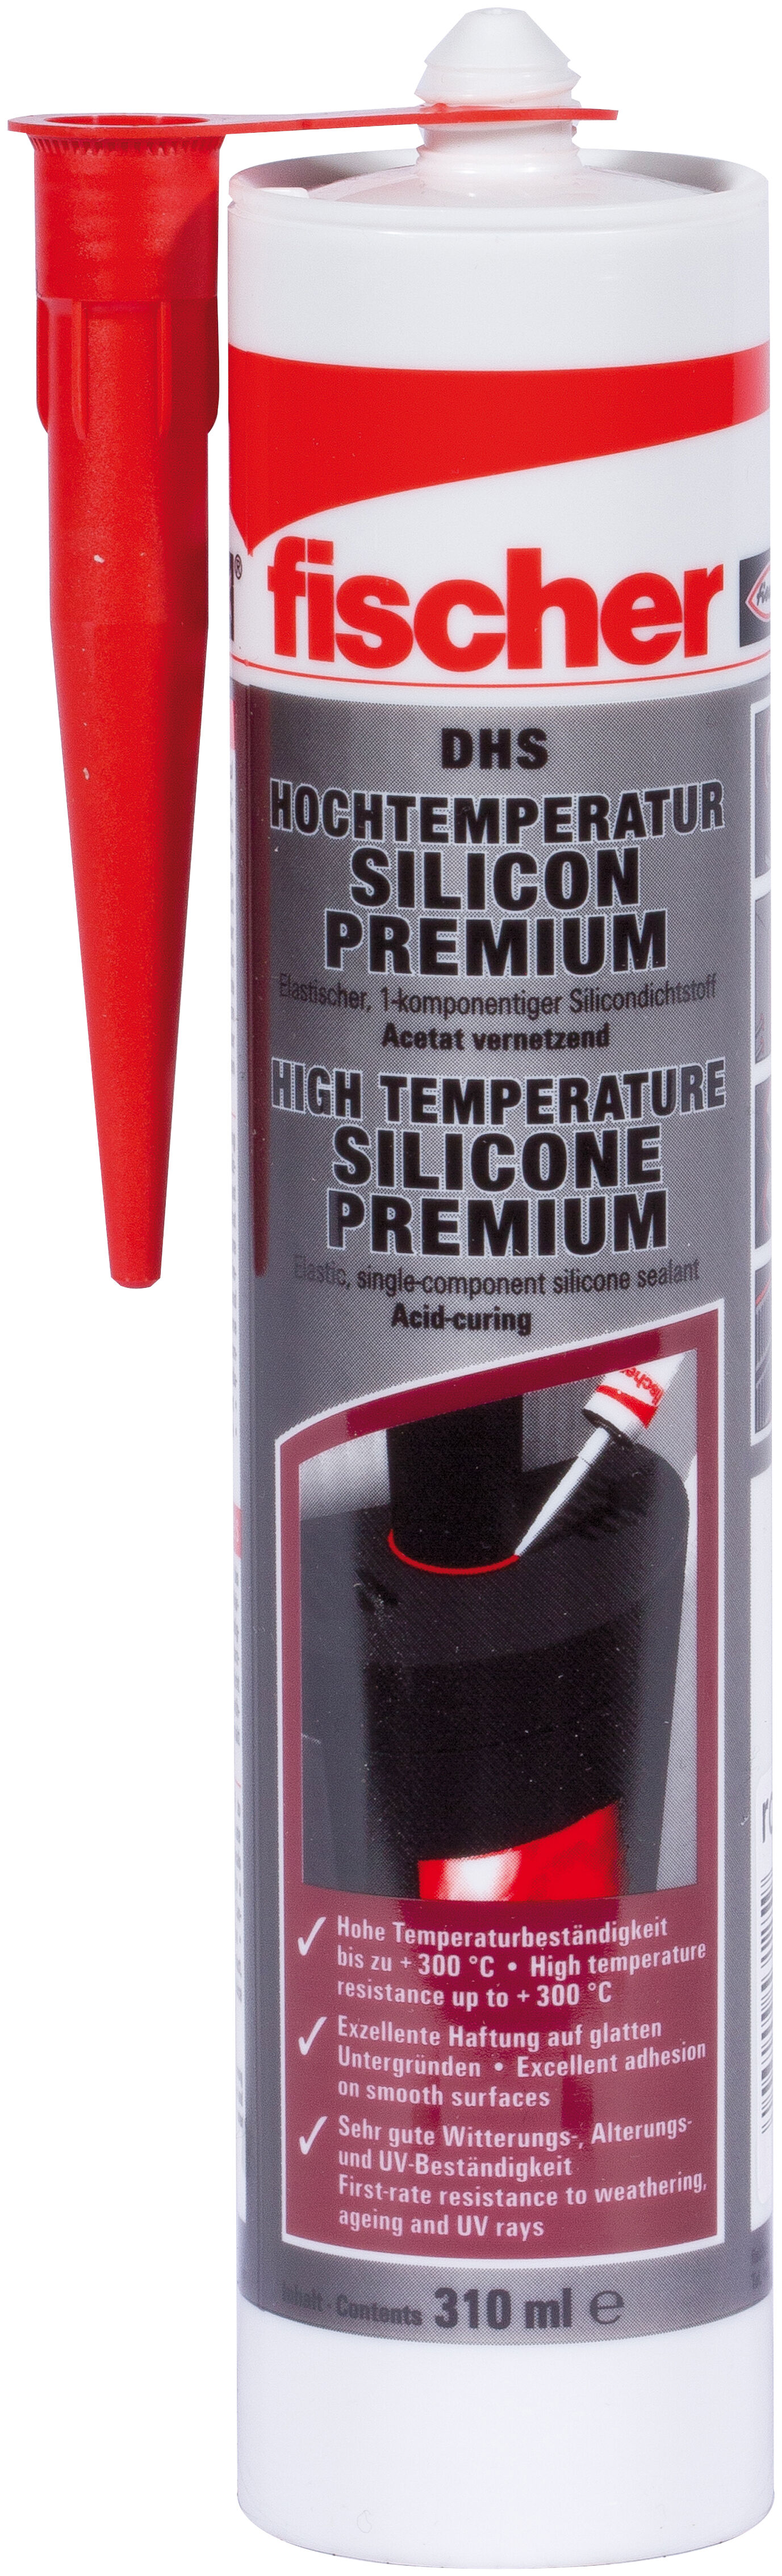 Premium high temperature silicone DHS